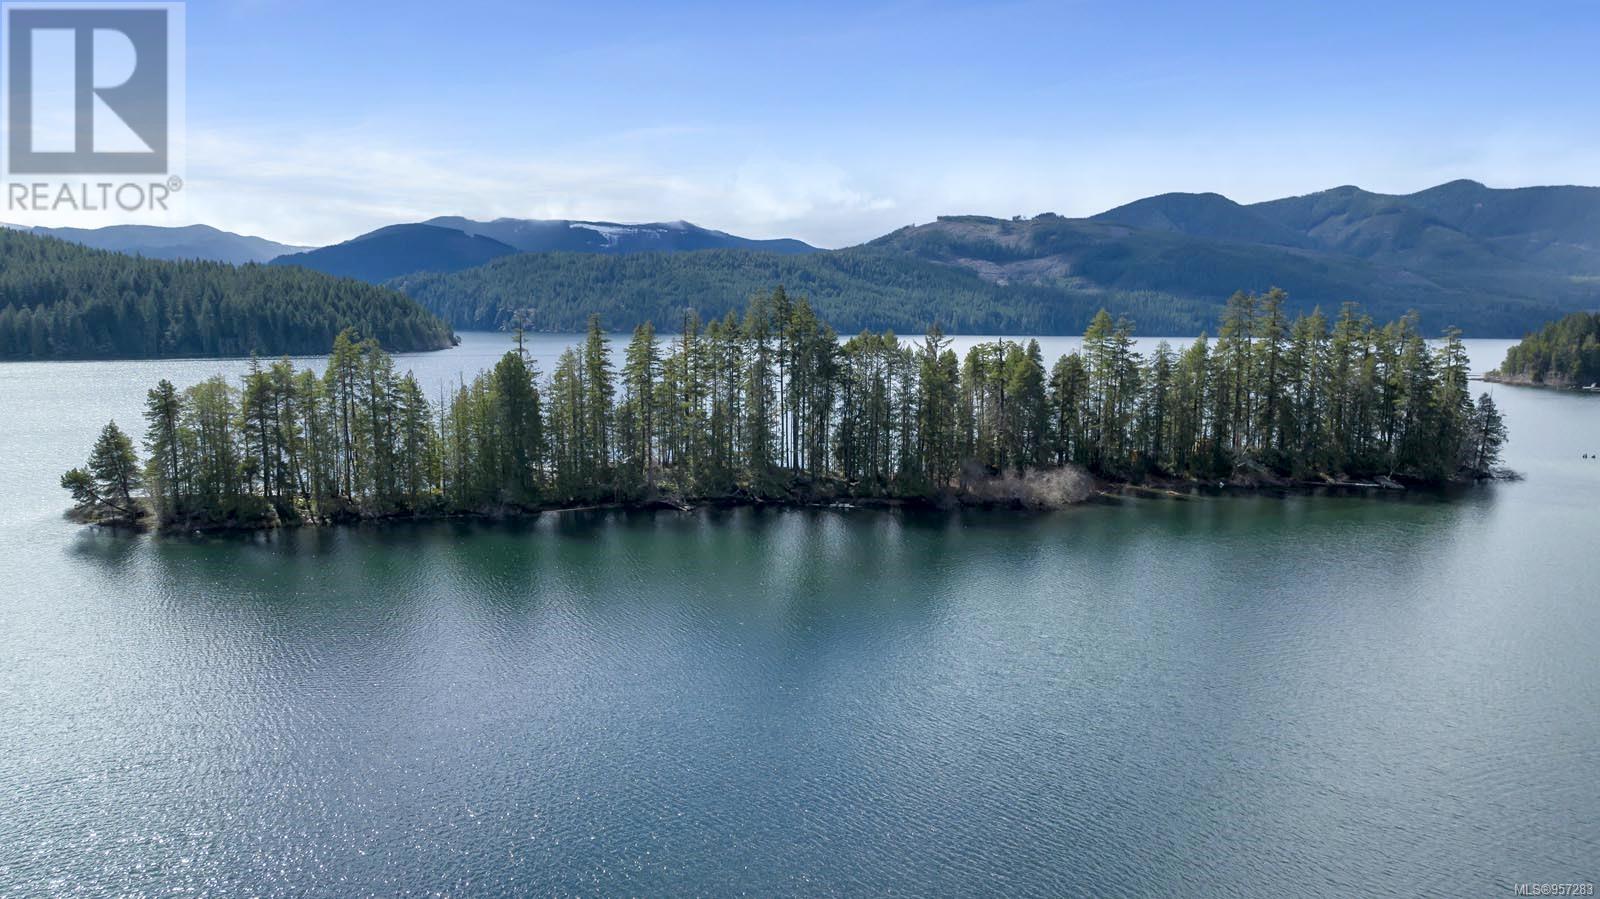 #4 Island, lake cowichan, British Columbia